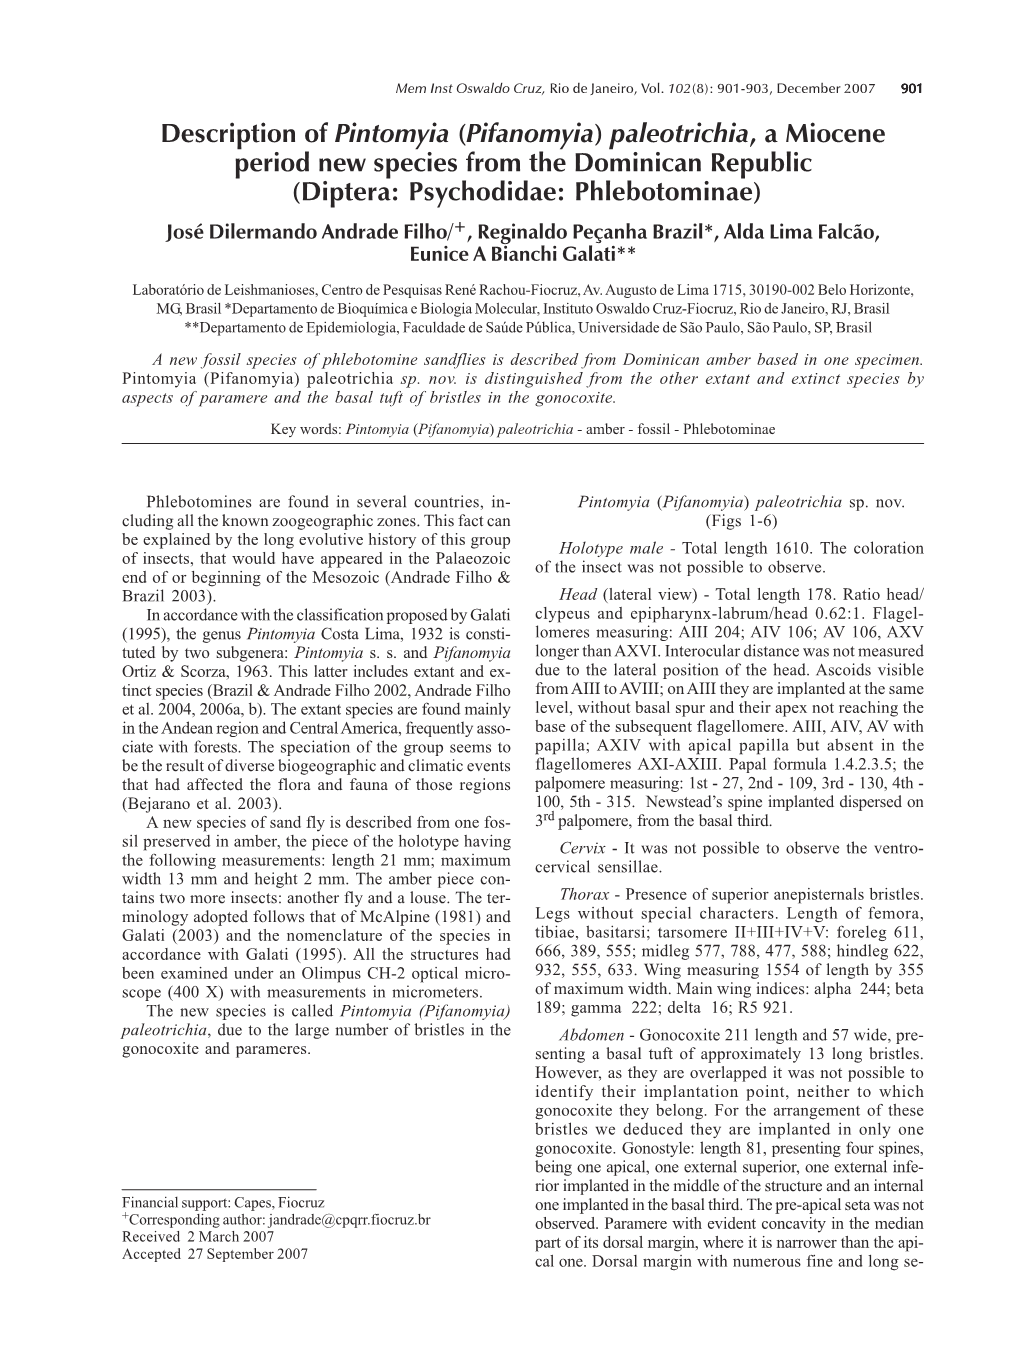 Description of Pintomyia (Pifanomyia) Paleotrichia, a Miocene Period New